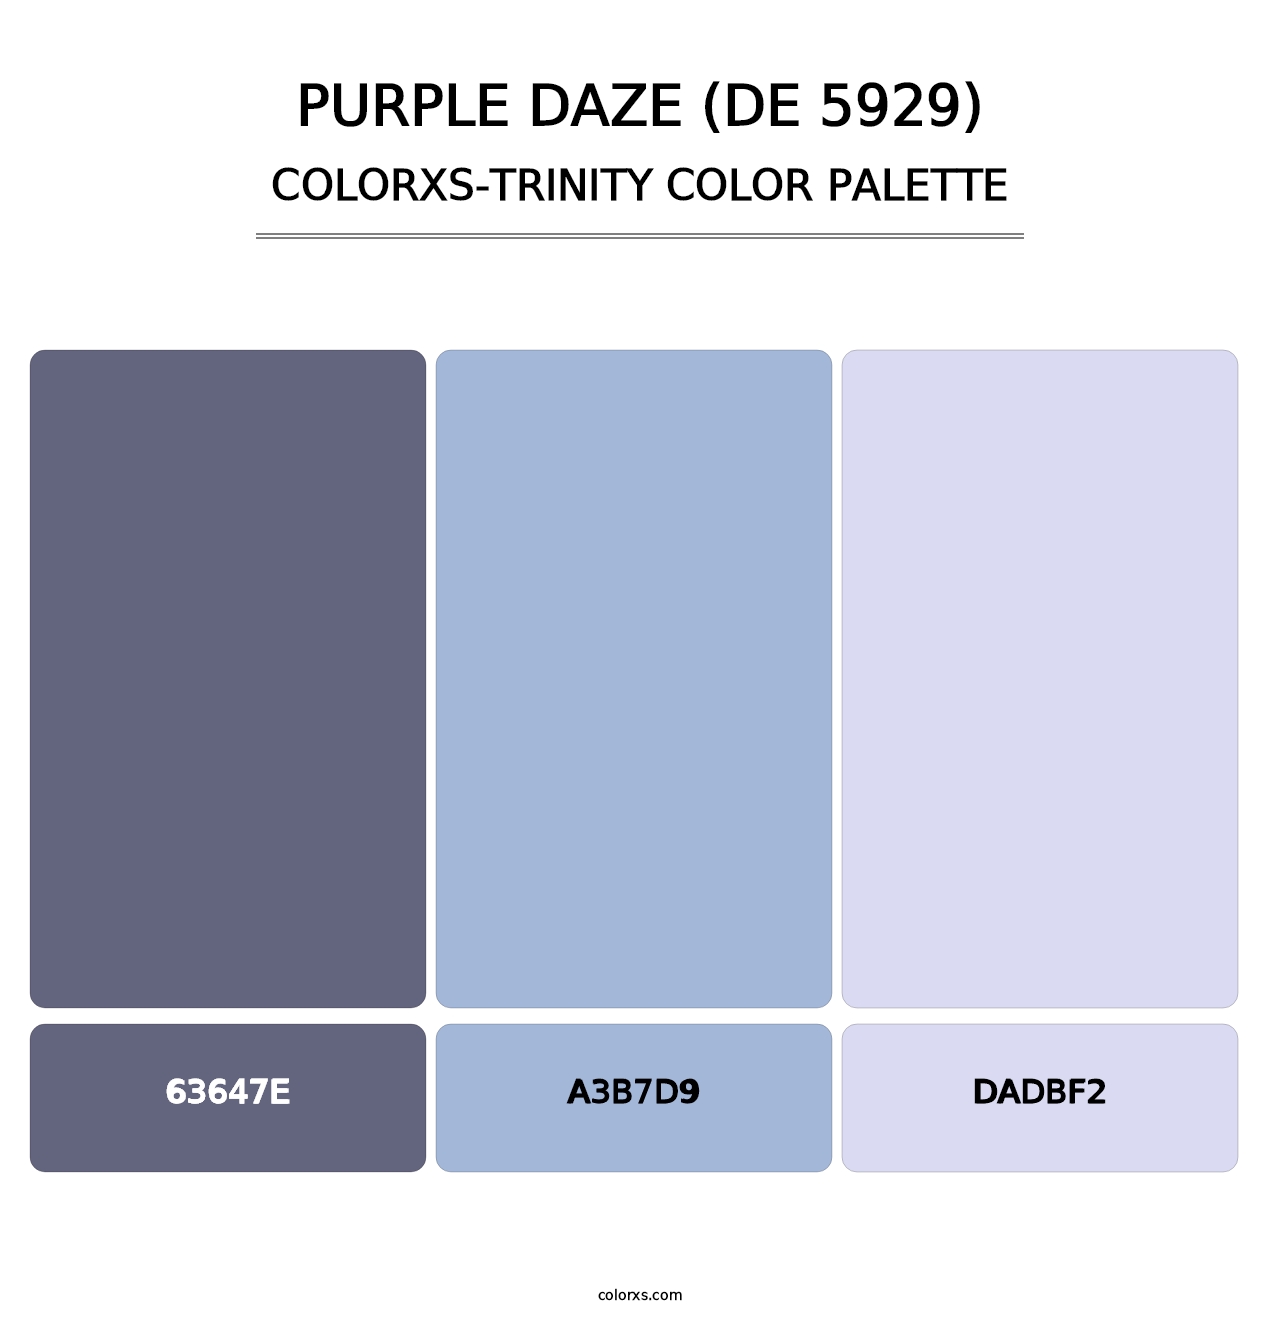 Purple Daze (DE 5929) - Colorxs Trinity Palette